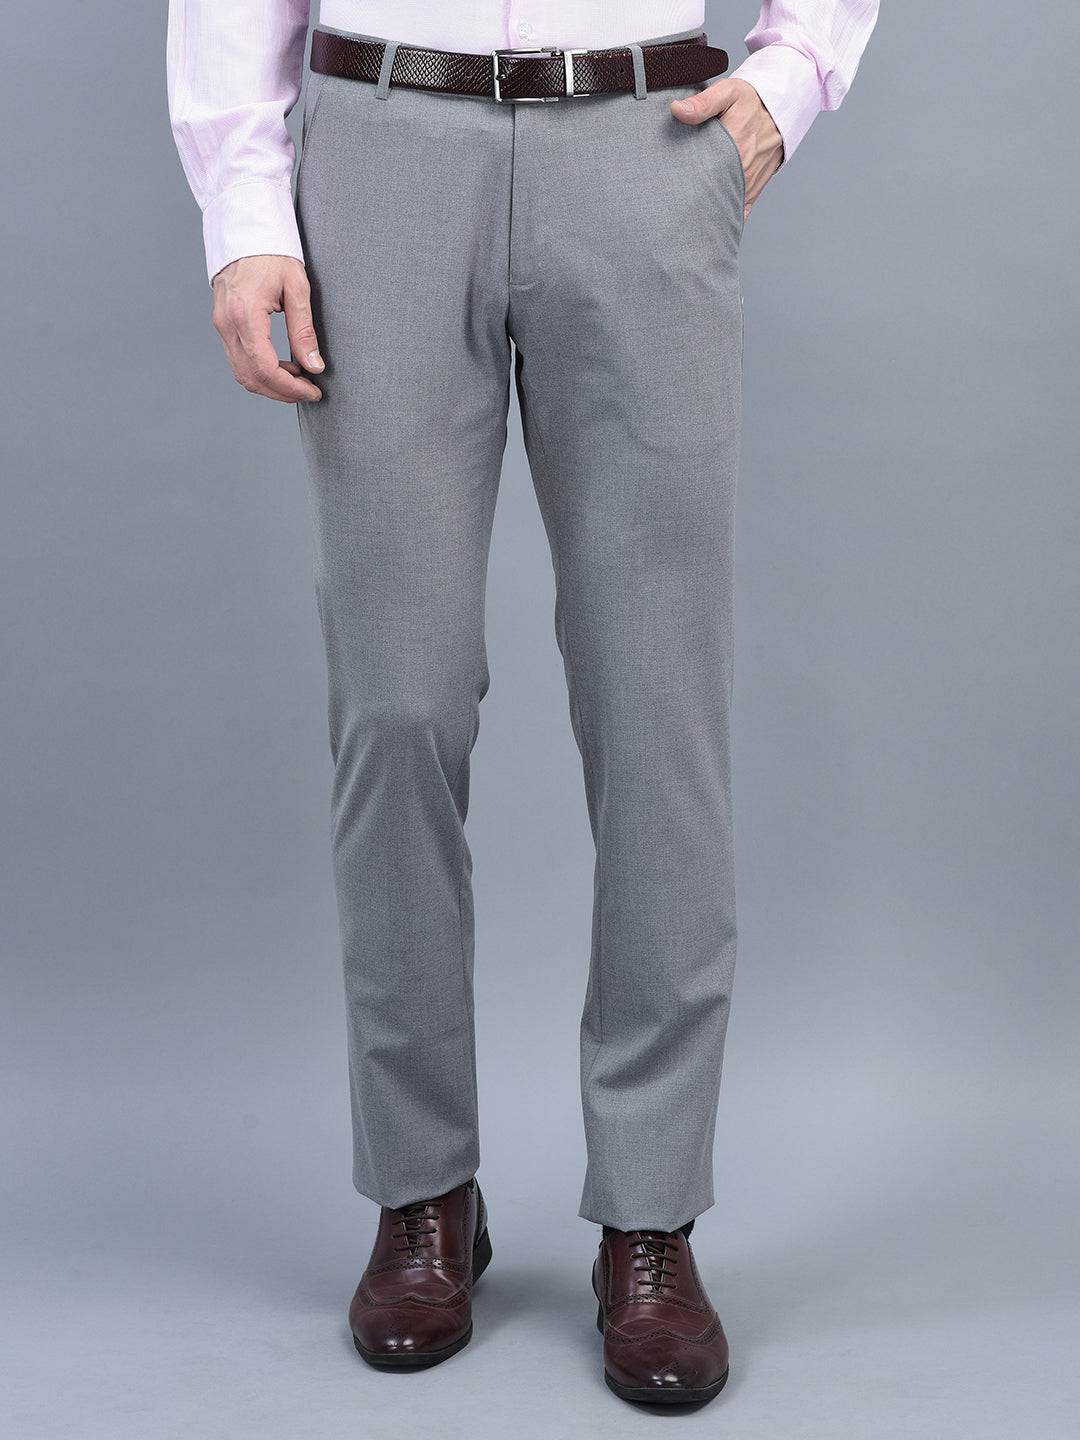 SREY Slim Fit Men Grey Trousers  Buy SREY Slim Fit Men Grey Trousers  Online at Best Prices in India  Flipkartcom